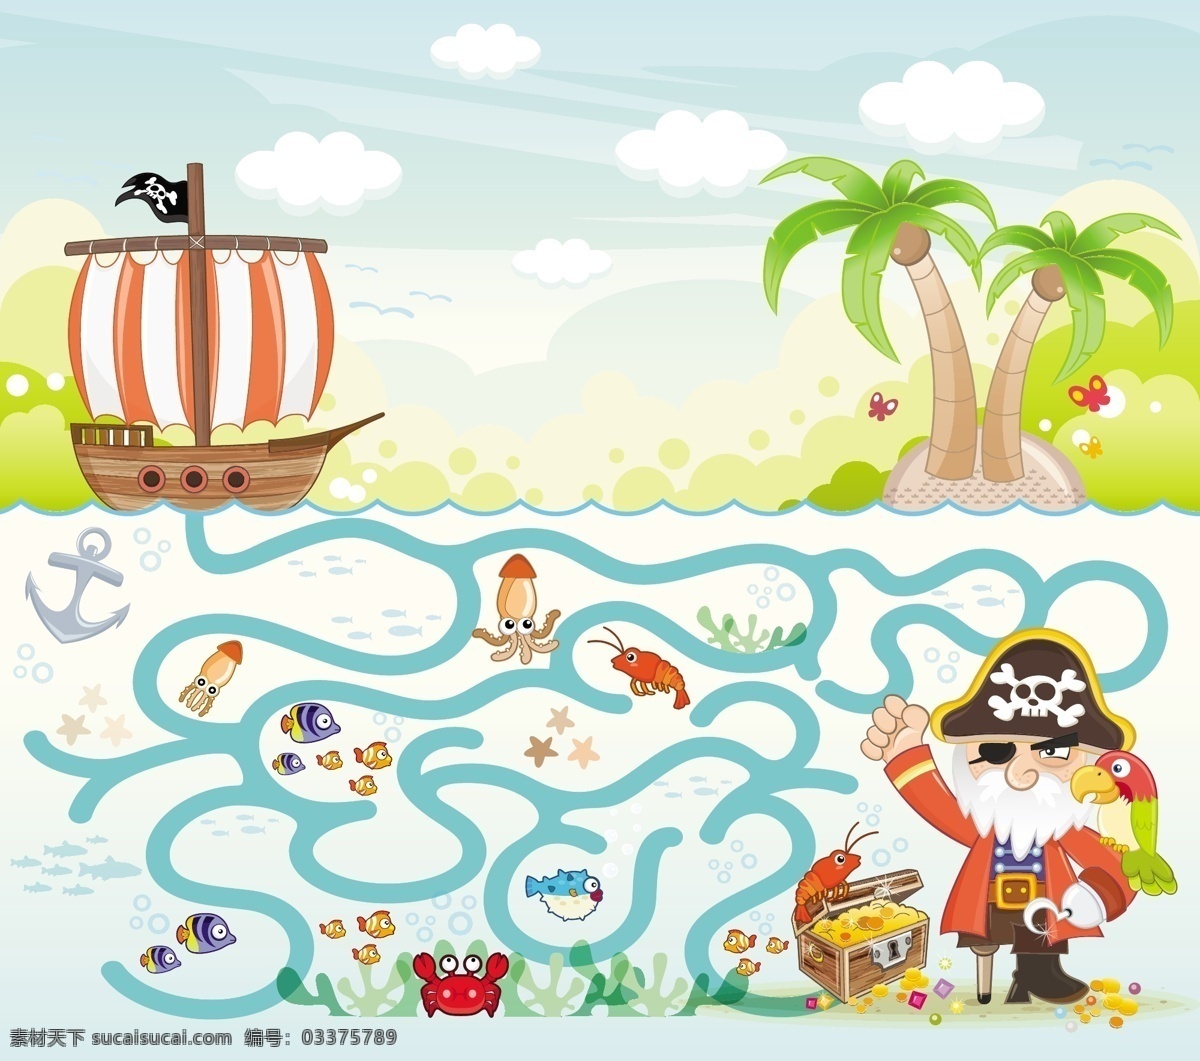 卡通 海盗 迷宫 背景 矢量 模板下载 船 动物 椰树 大海 卡通背景 迷宫背景 其他艺术 文化艺术 生活百科 矢量素材 白色